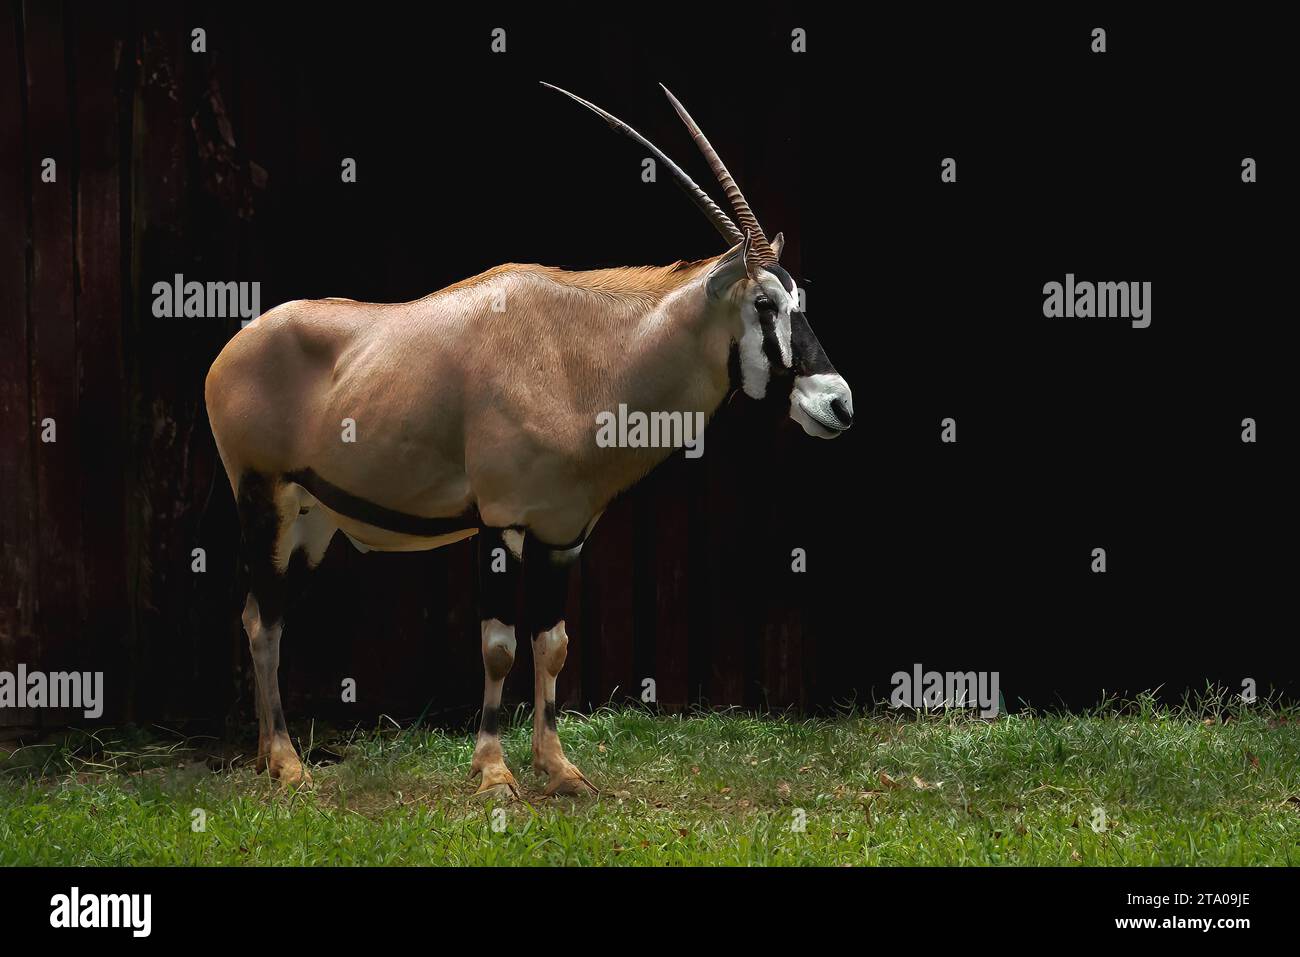 Male Gemsbok or South African Oryx (Oryx gazella) Stock Photo